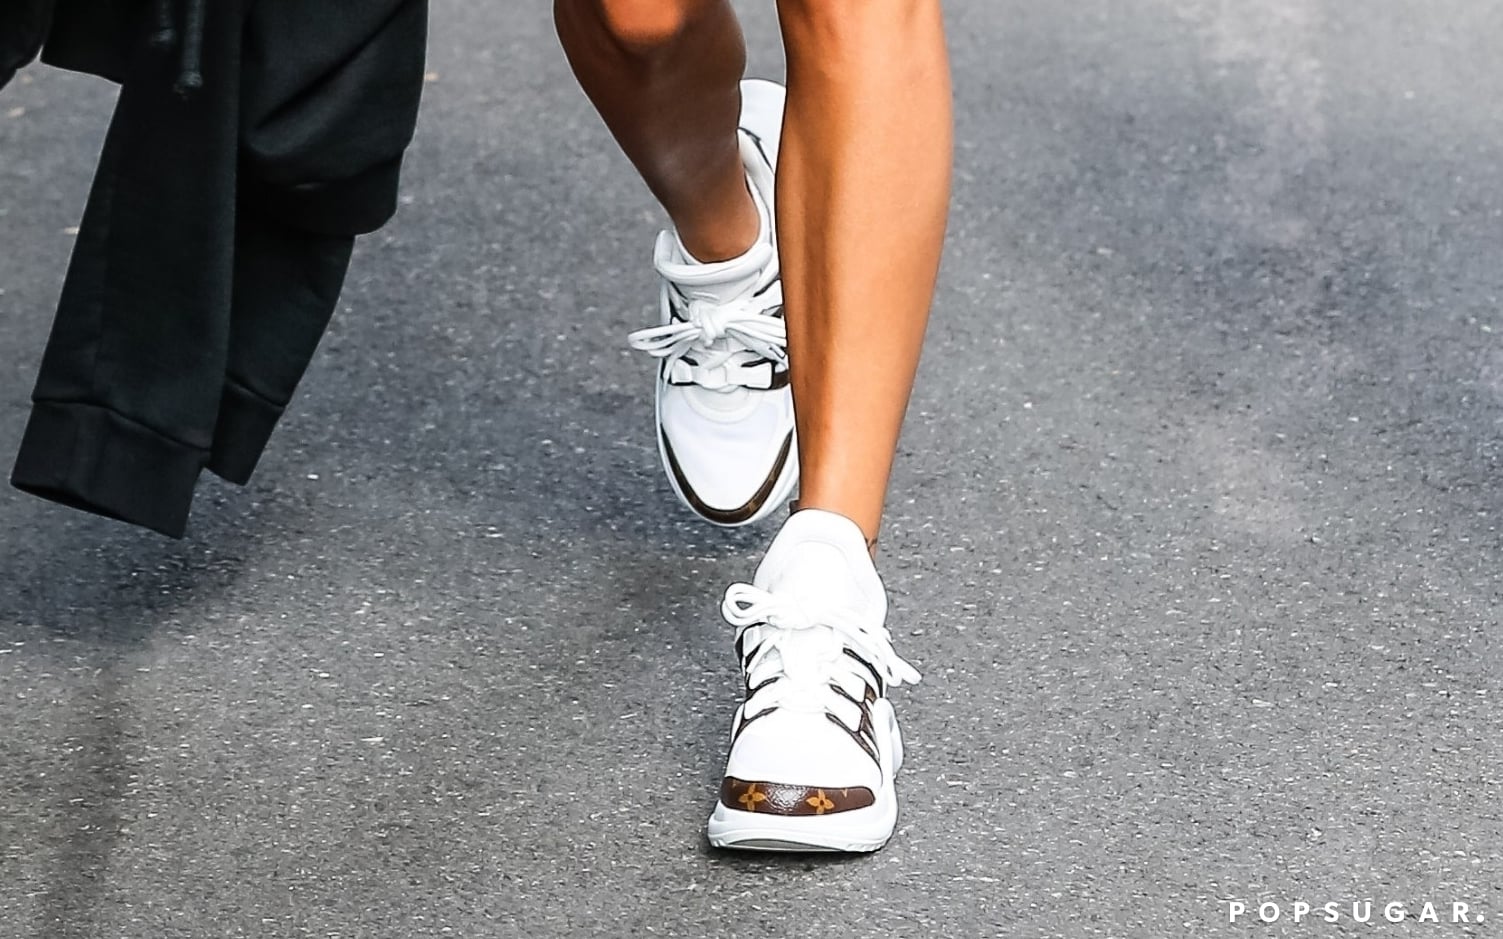 Hailey Baldwin Wears $1150 Louis Vuitton Archlight Sneakers, Justin Bieber  – Footwear News